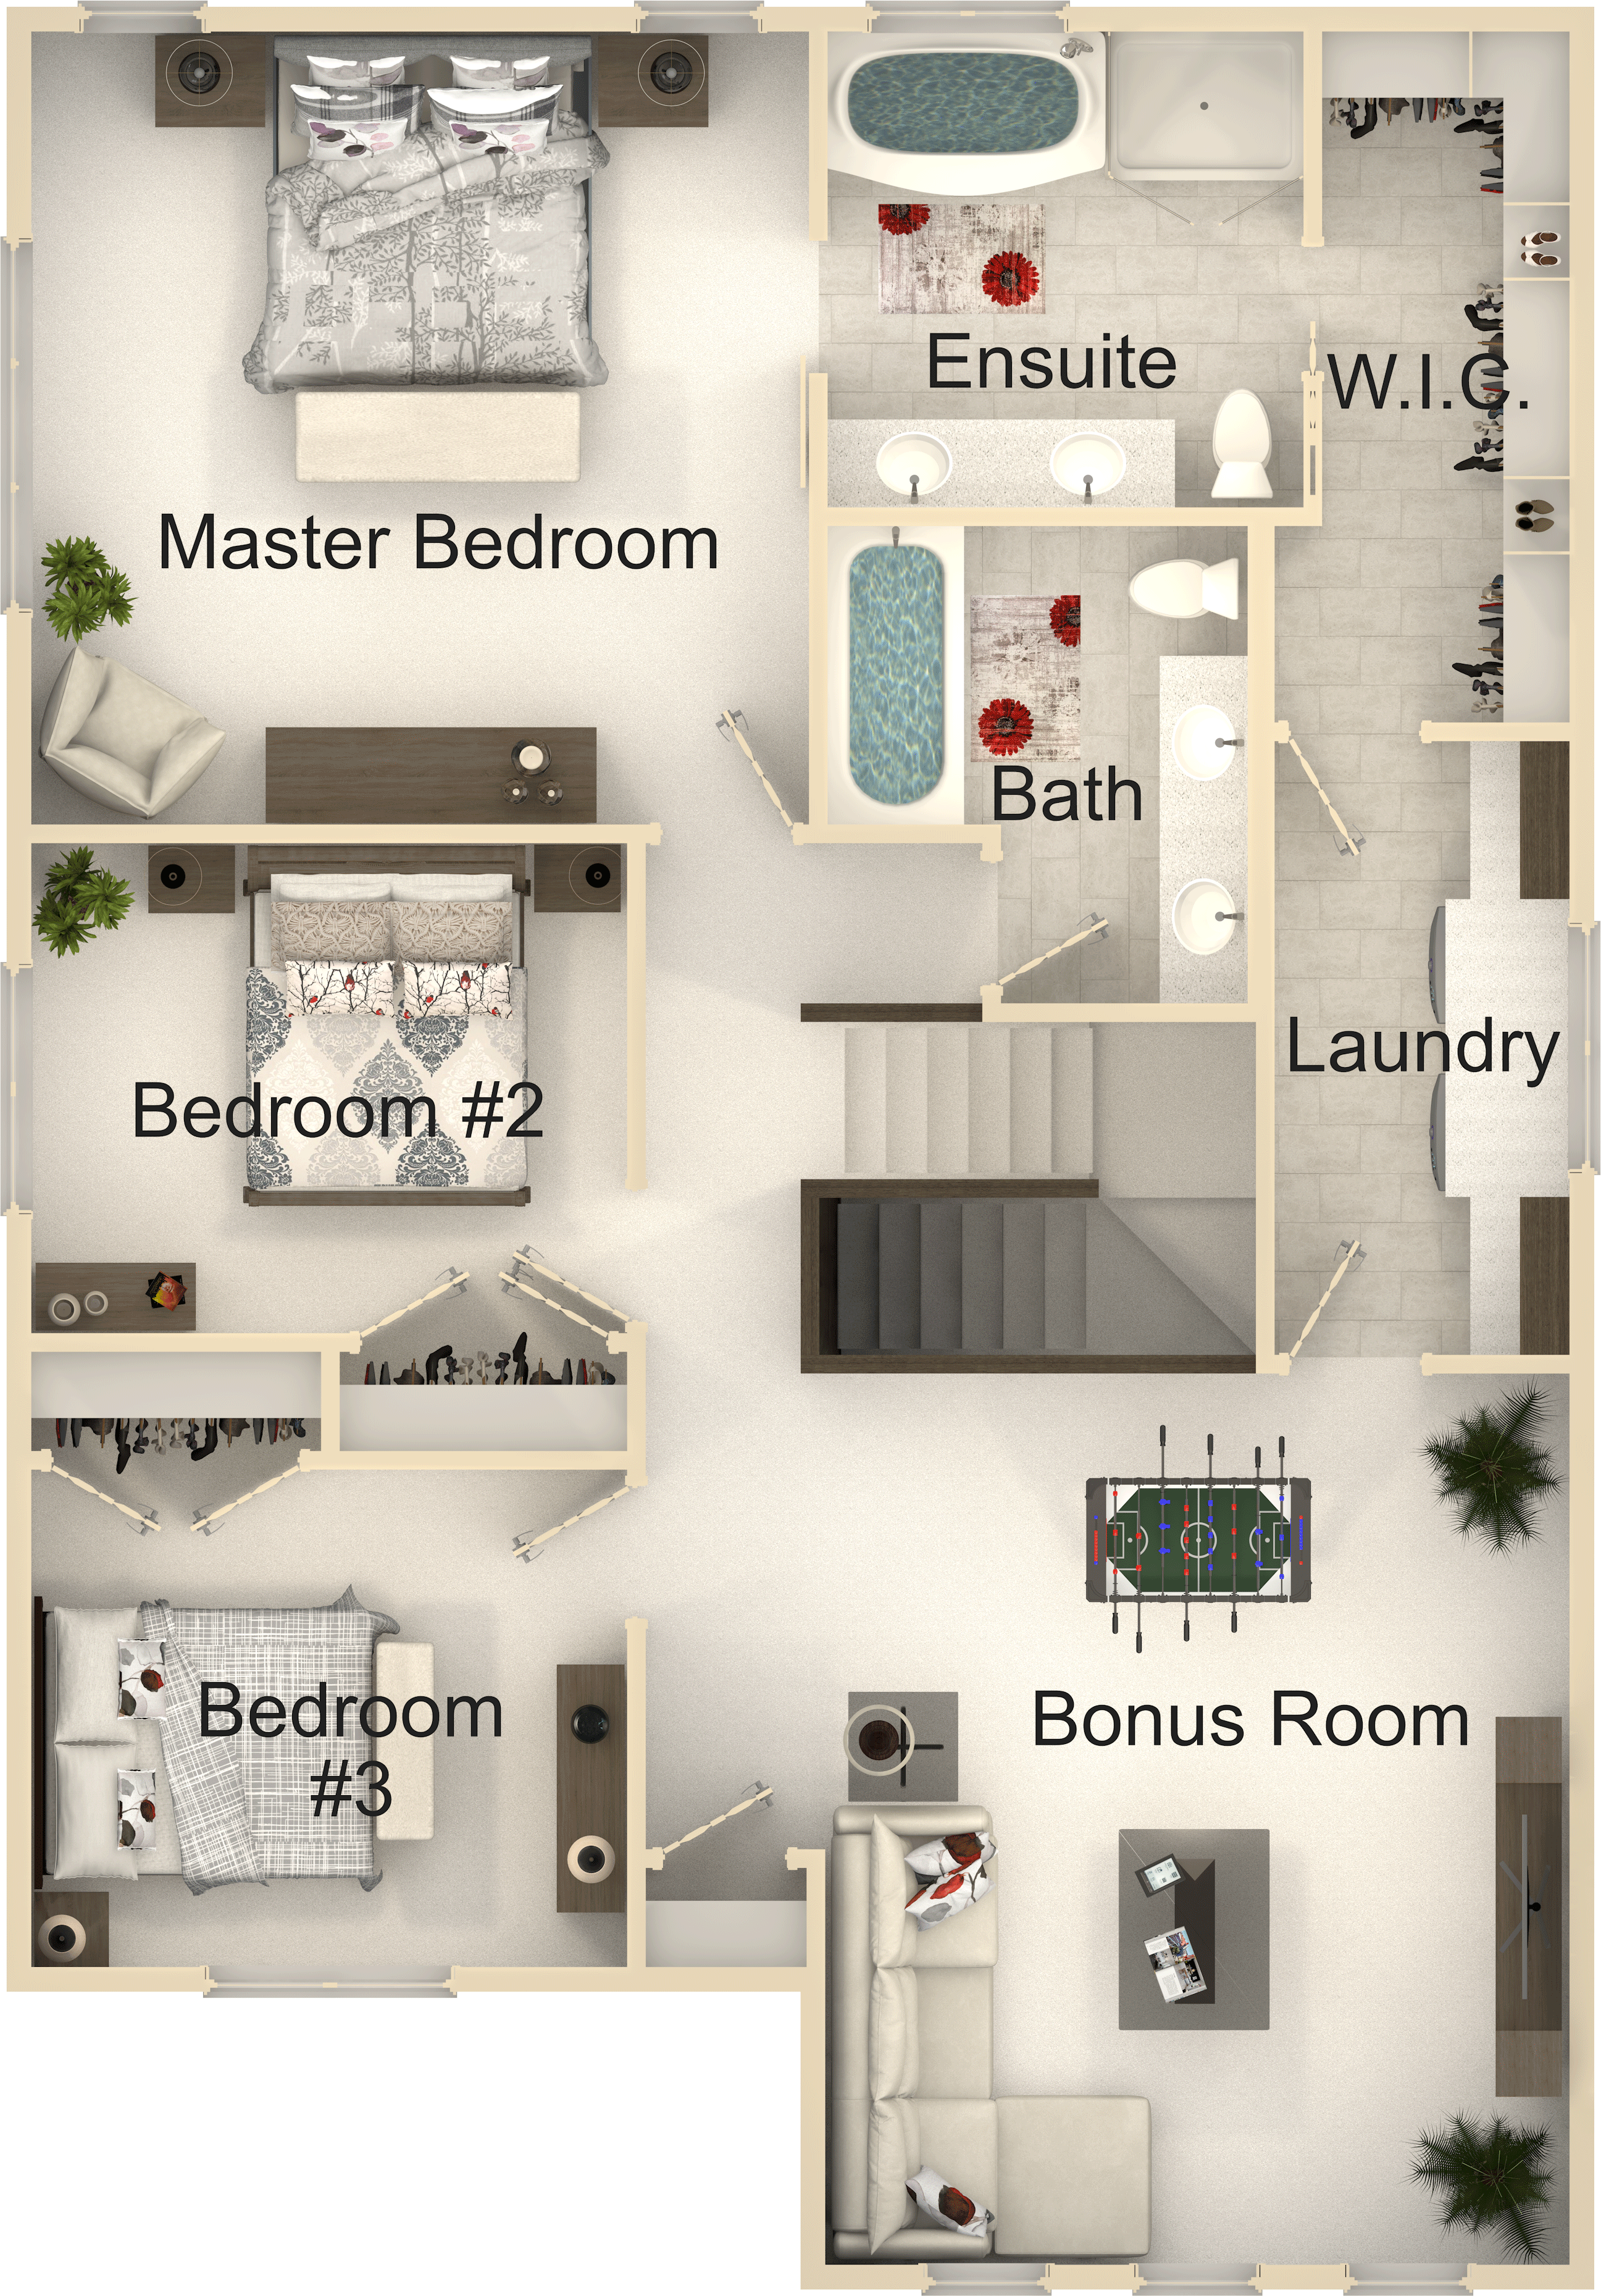 Branston---Plan-(Second-Floor).png